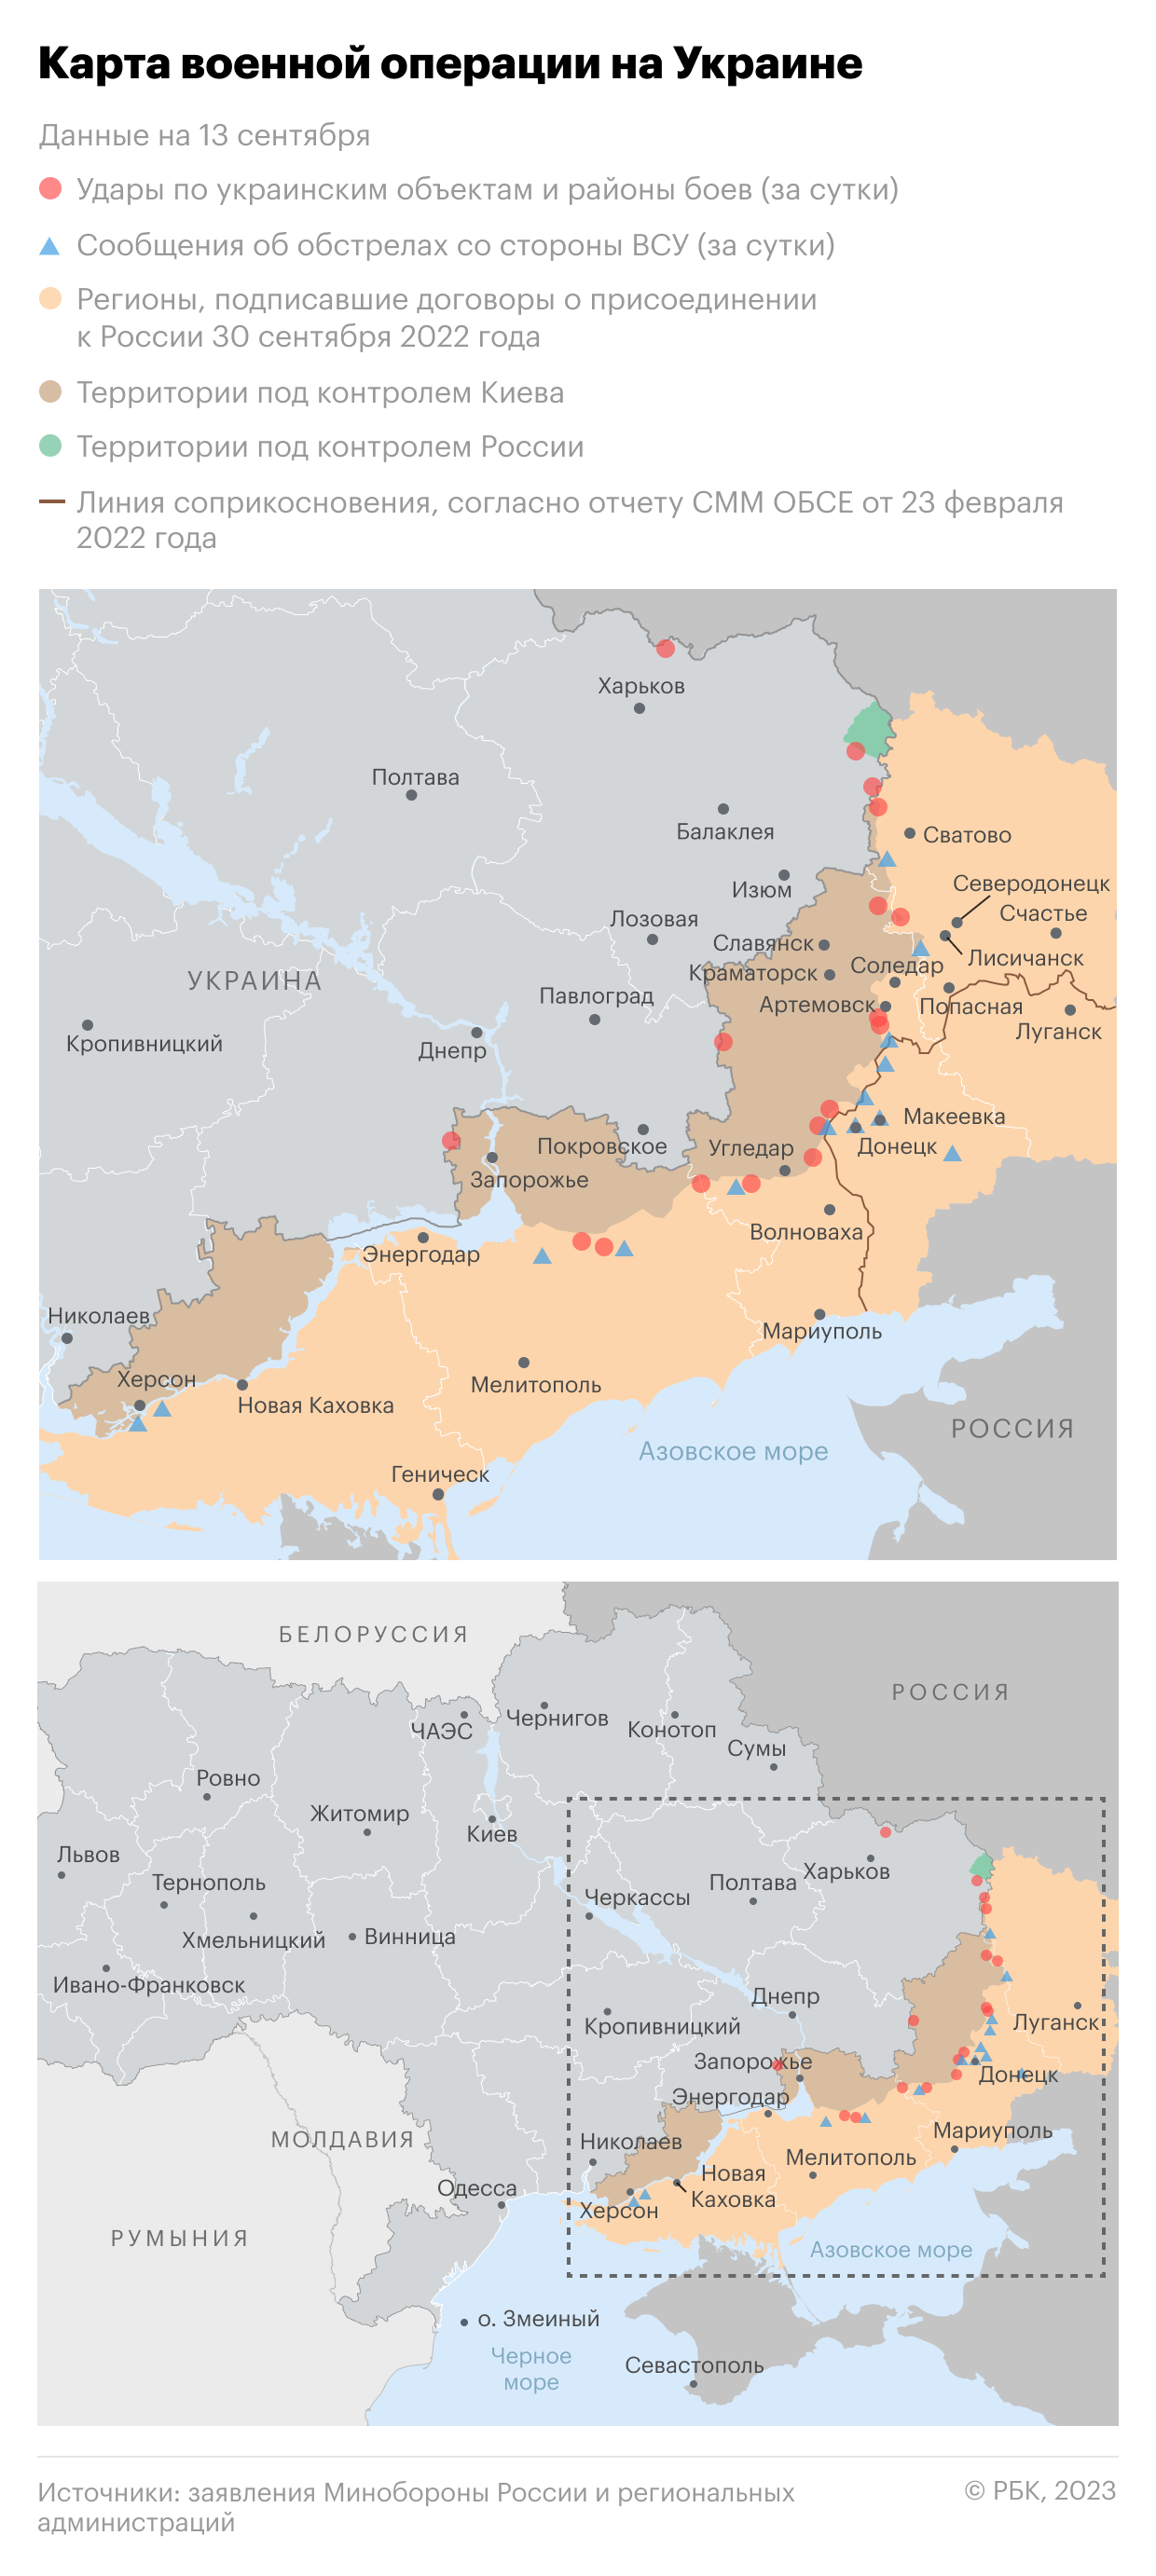 Военная операция на Украине. Карта на 13 сентября